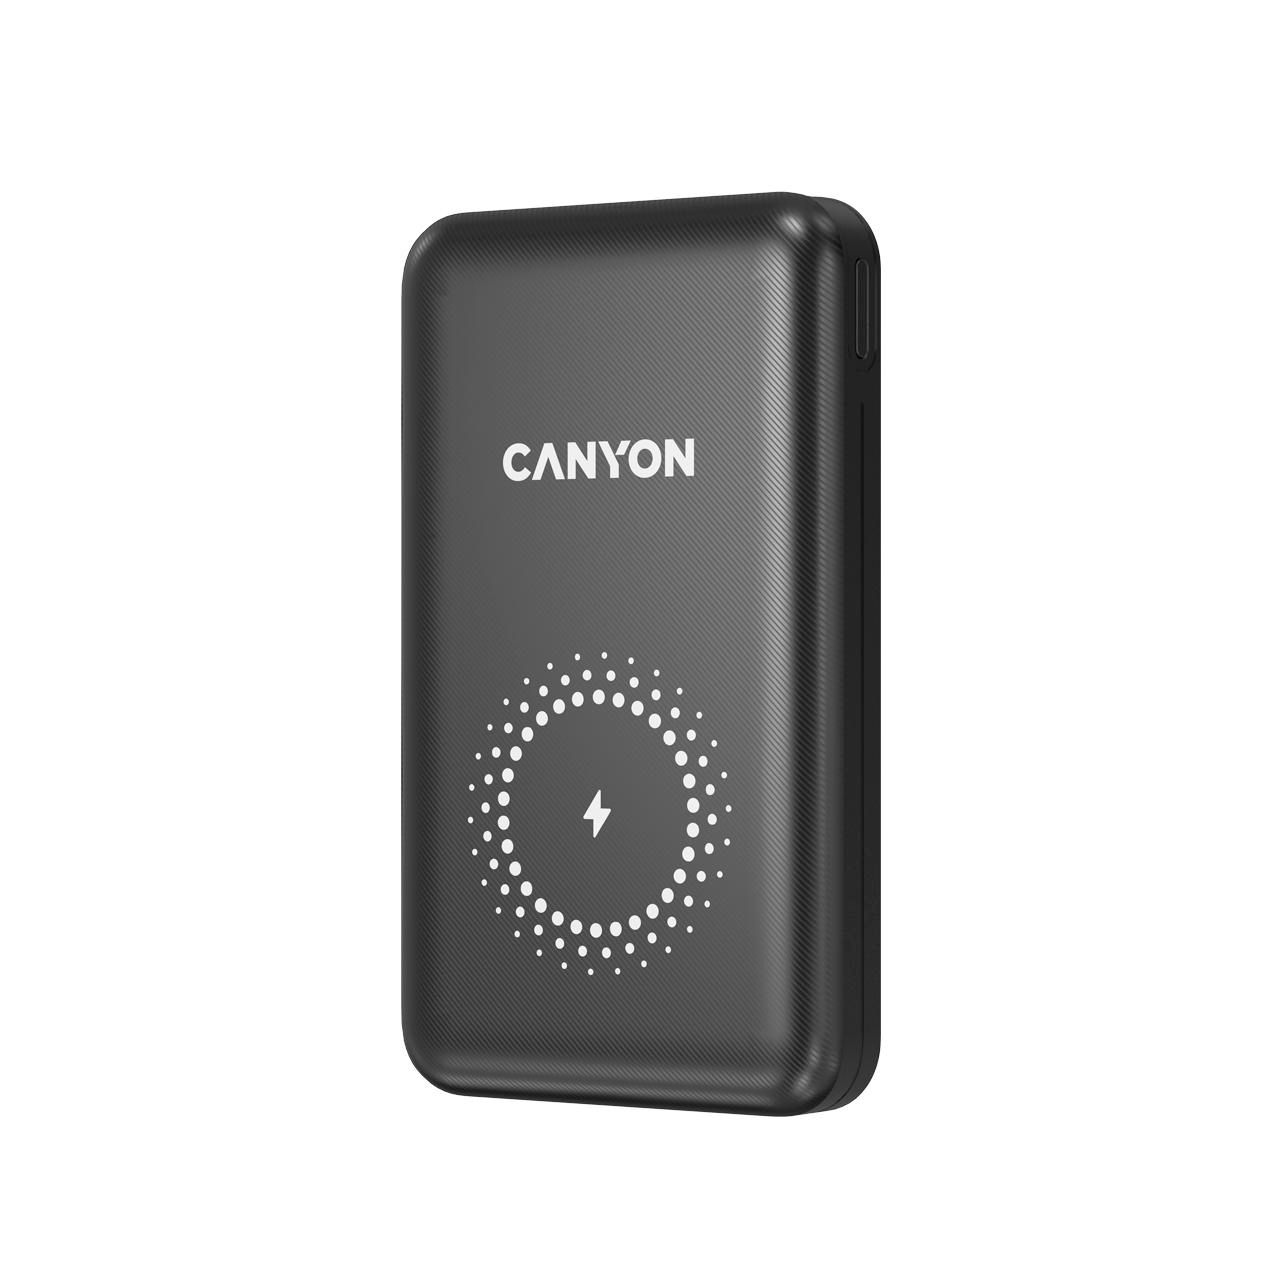 CANYON Powerbank PB-1001  10000 mAh  PD/QC/Wireless    black retail